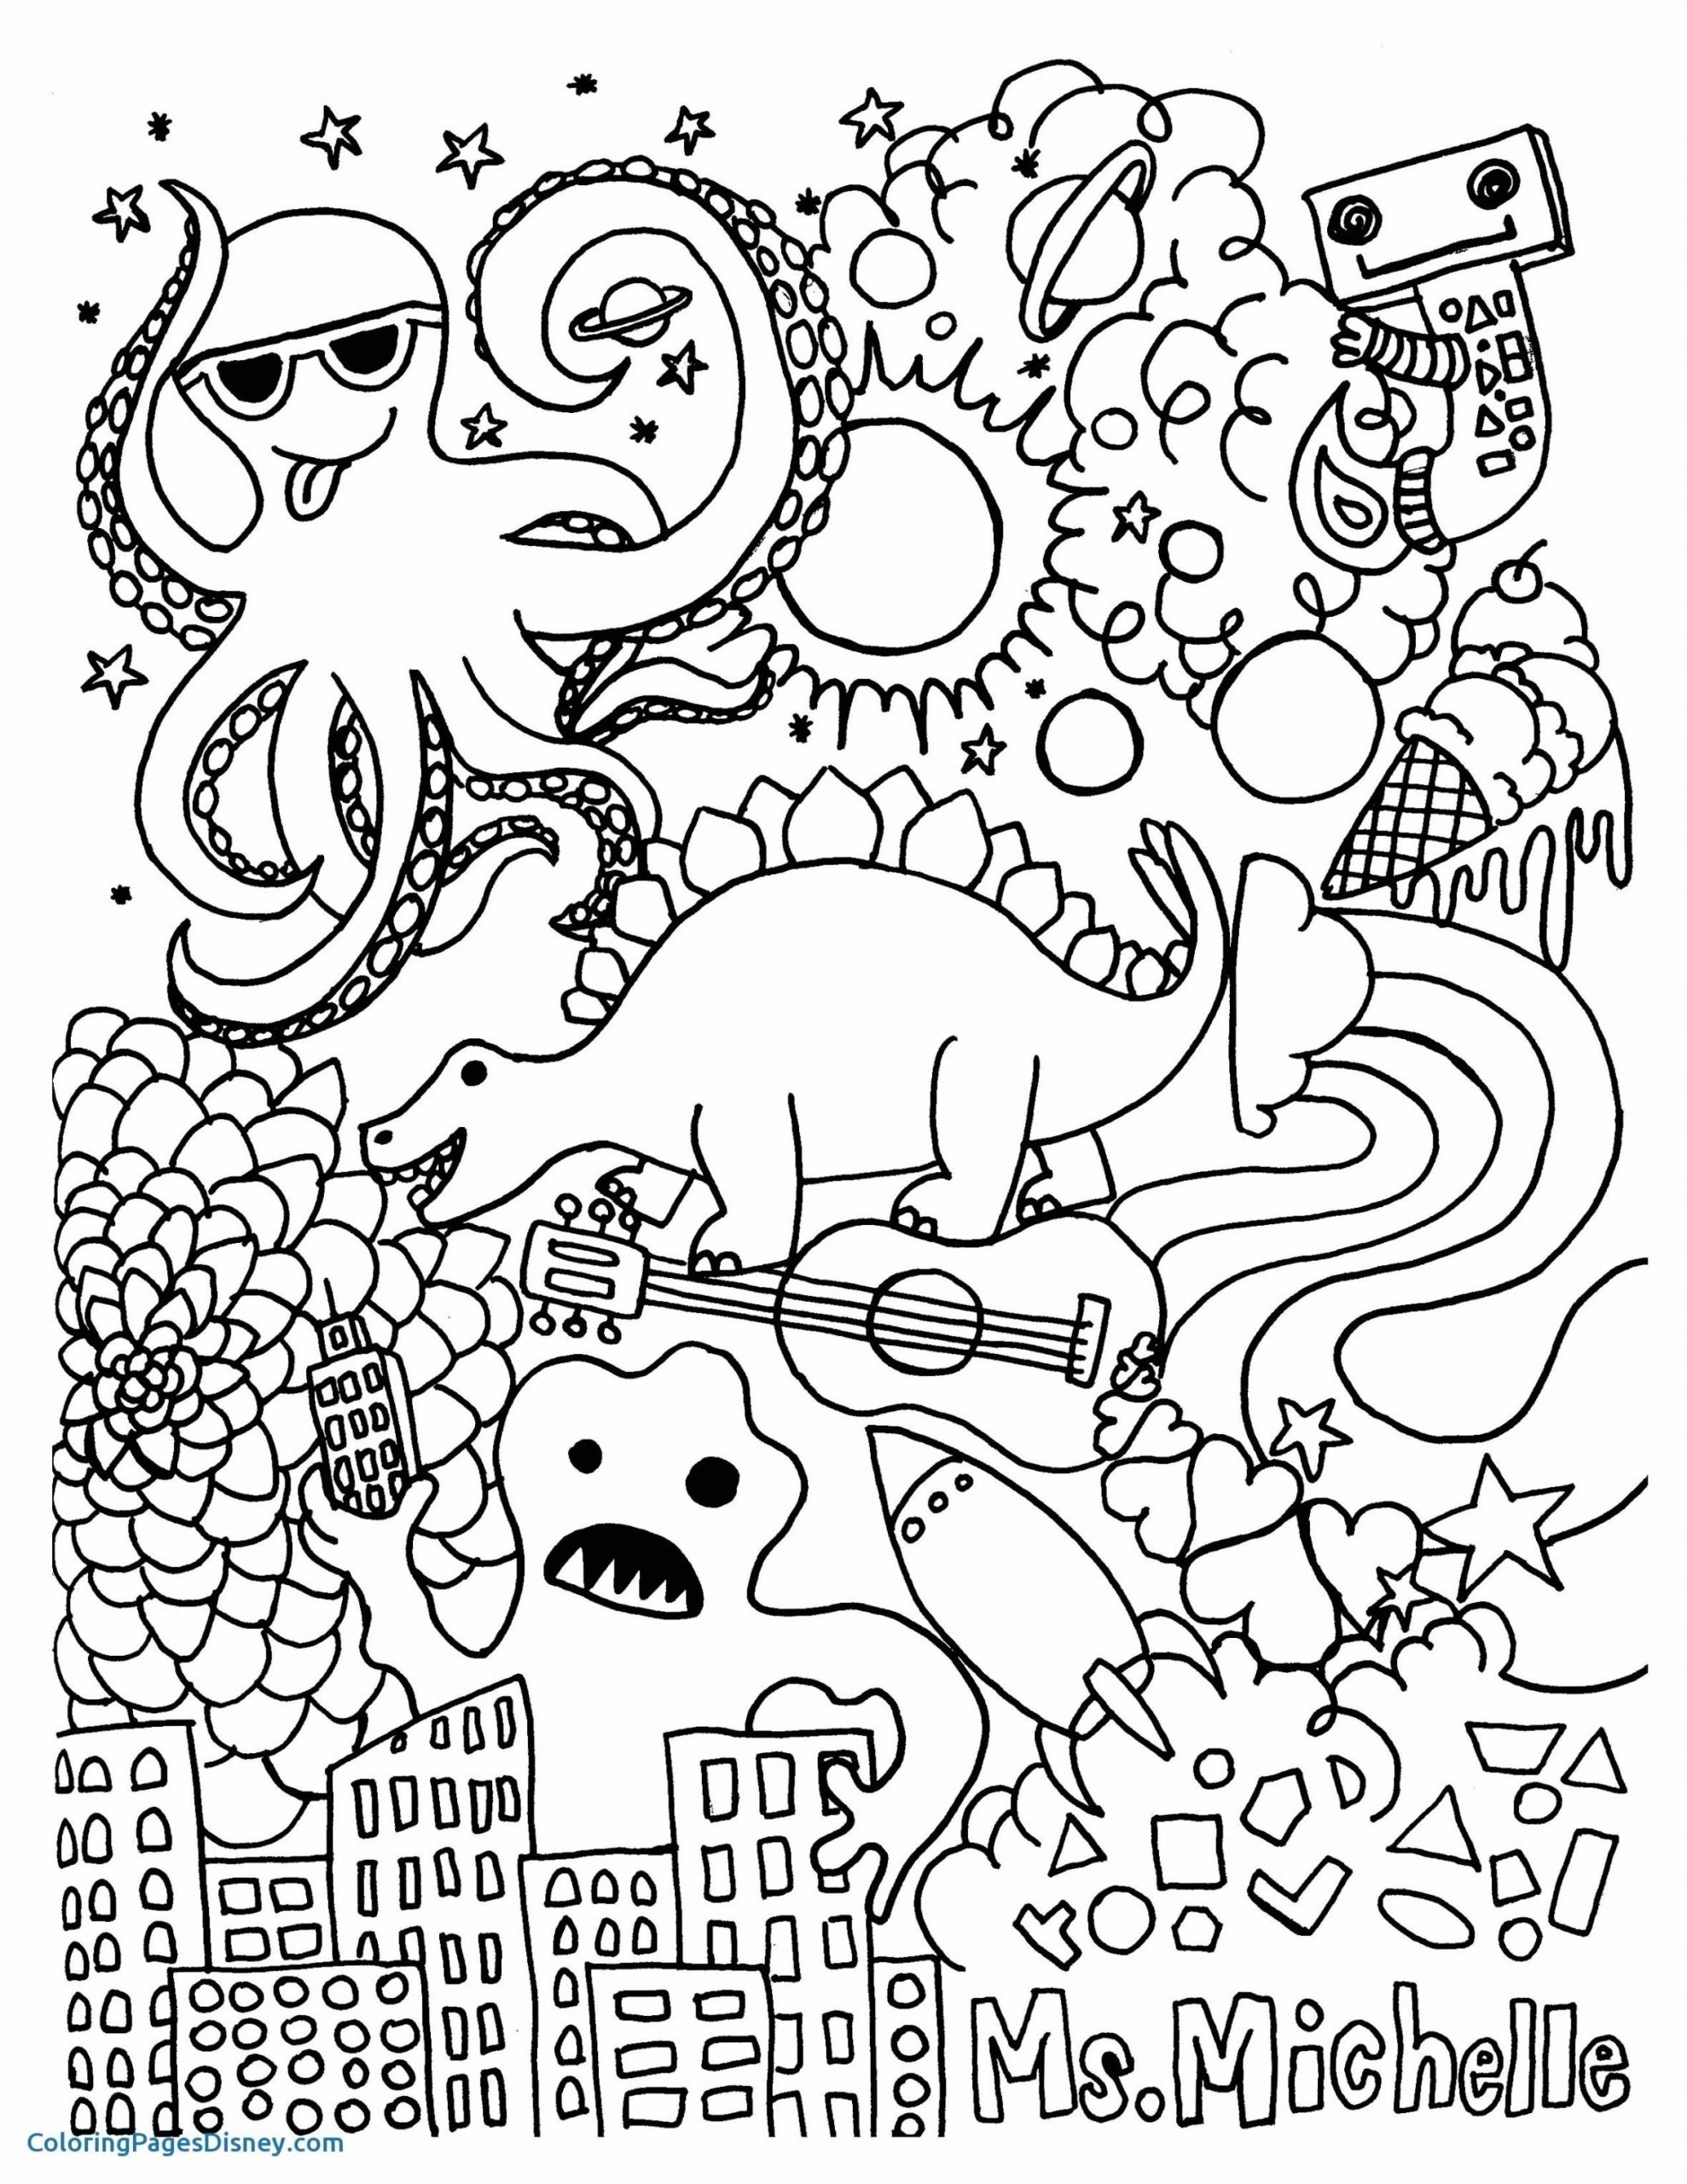 dessin enfant coloriage filename coloring page nouveau awesome cheval coloriage en ligne filename coloring page of dessin enfant coloriage filename coloring page